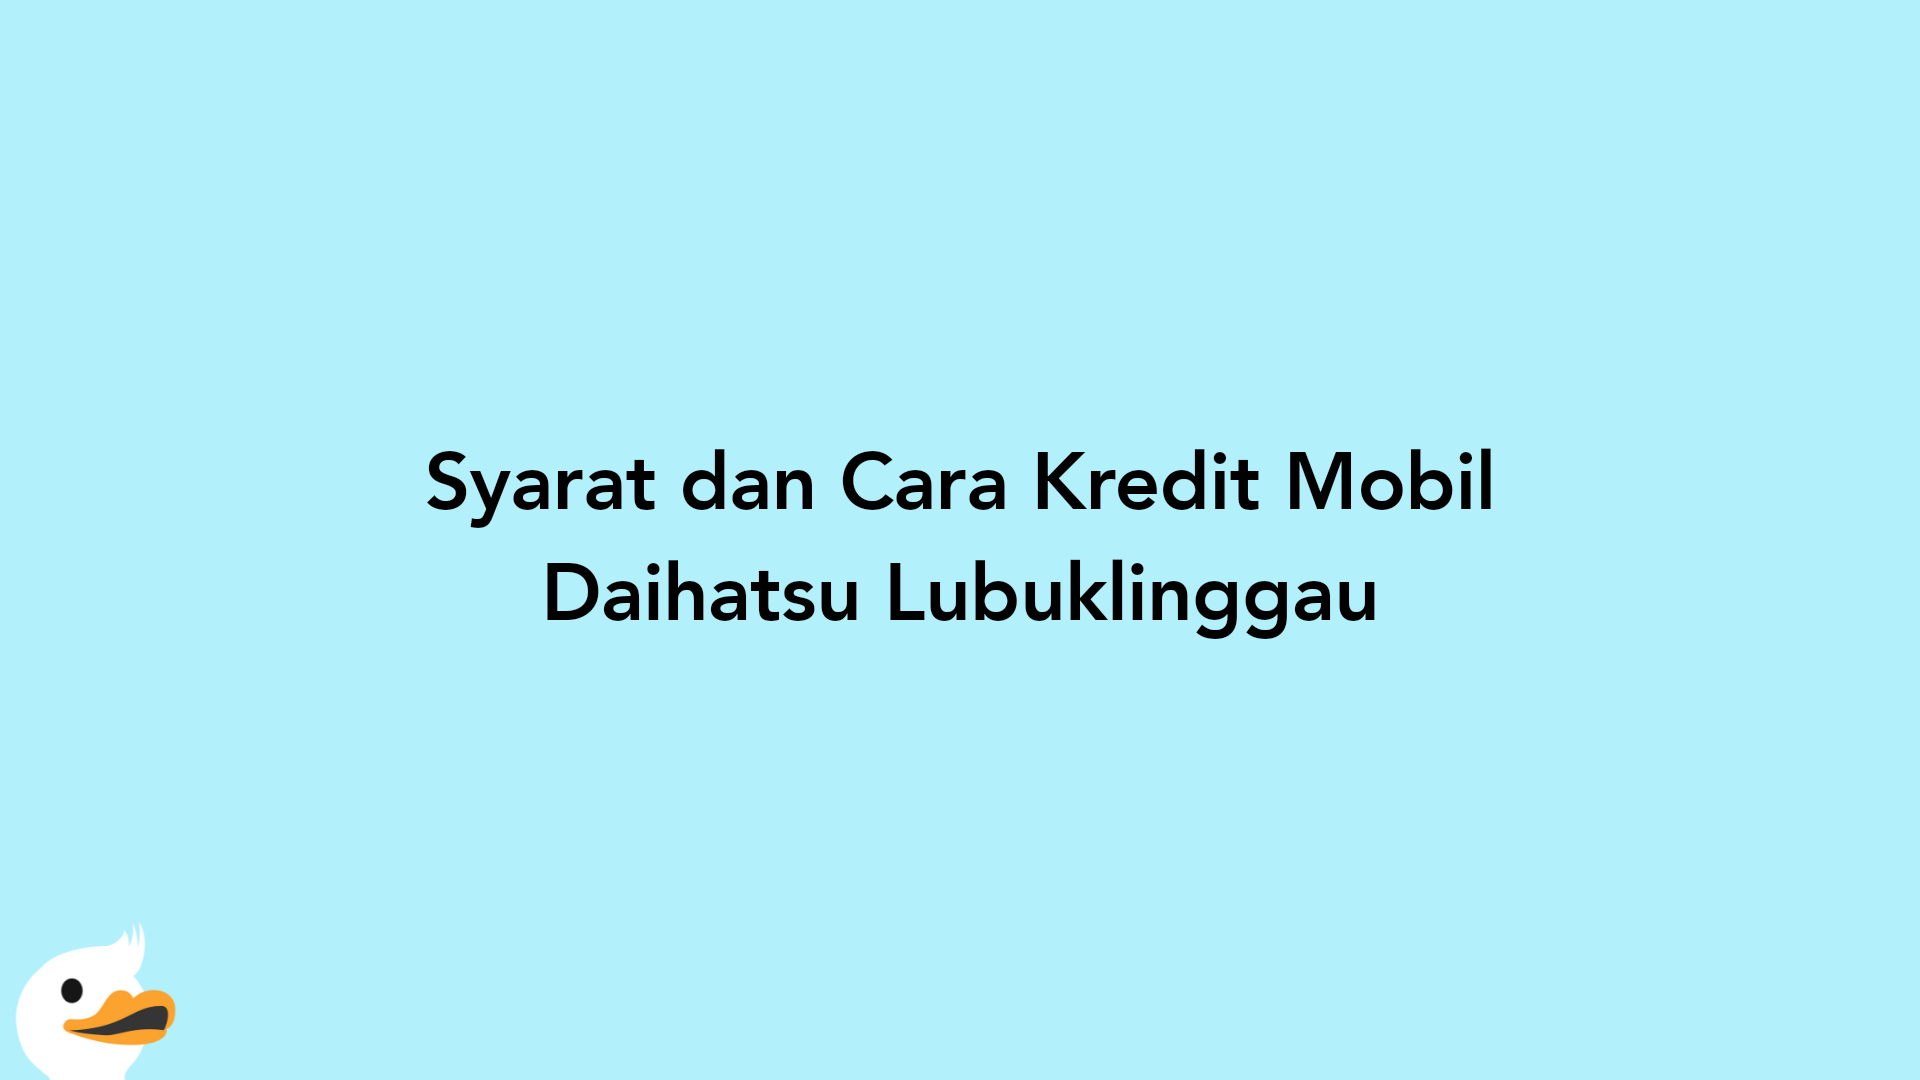 Syarat dan Cara Kredit Mobil Daihatsu Lubuklinggau